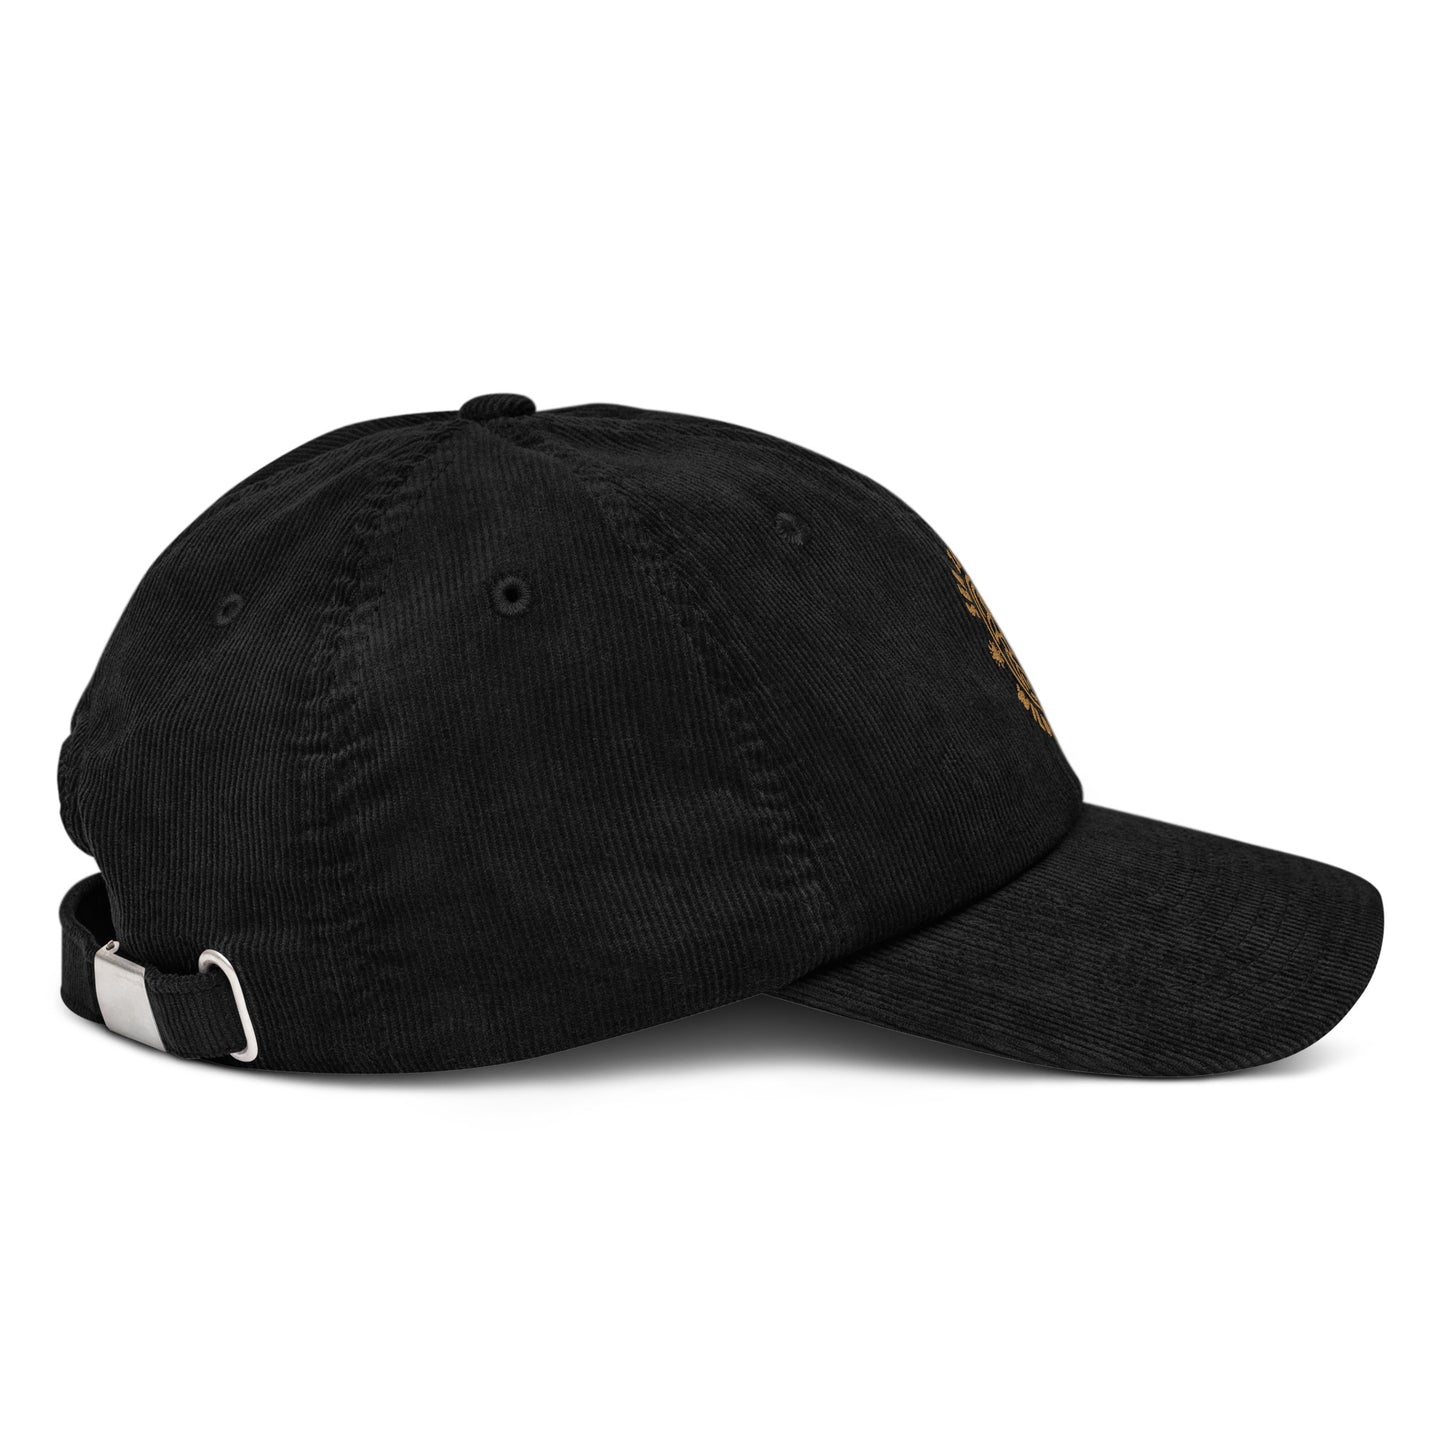 Sea Zephyr corduroy hat - black